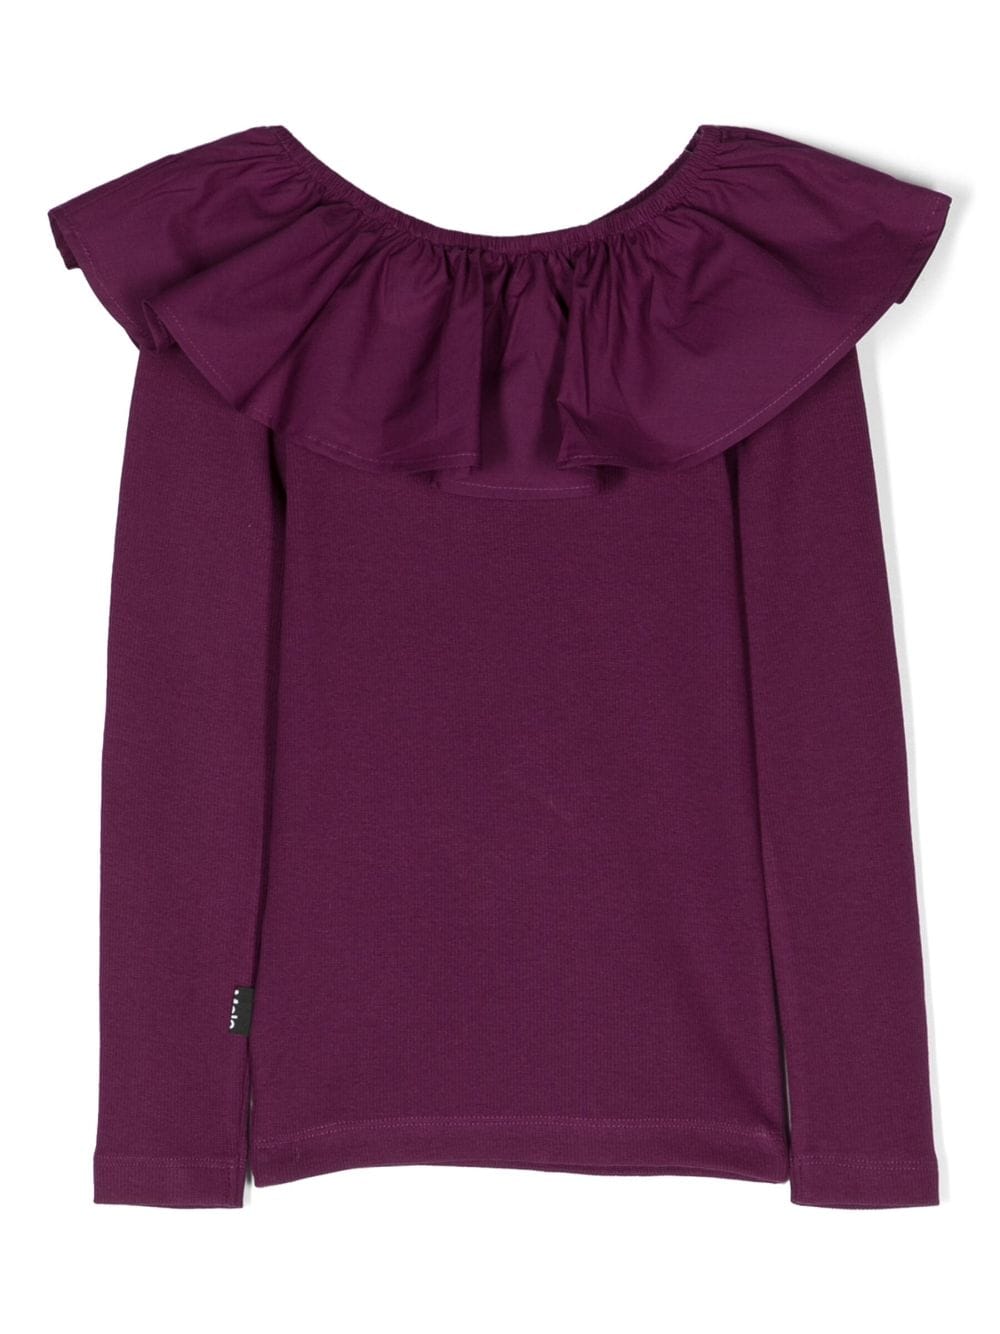 T-shirt fille violet